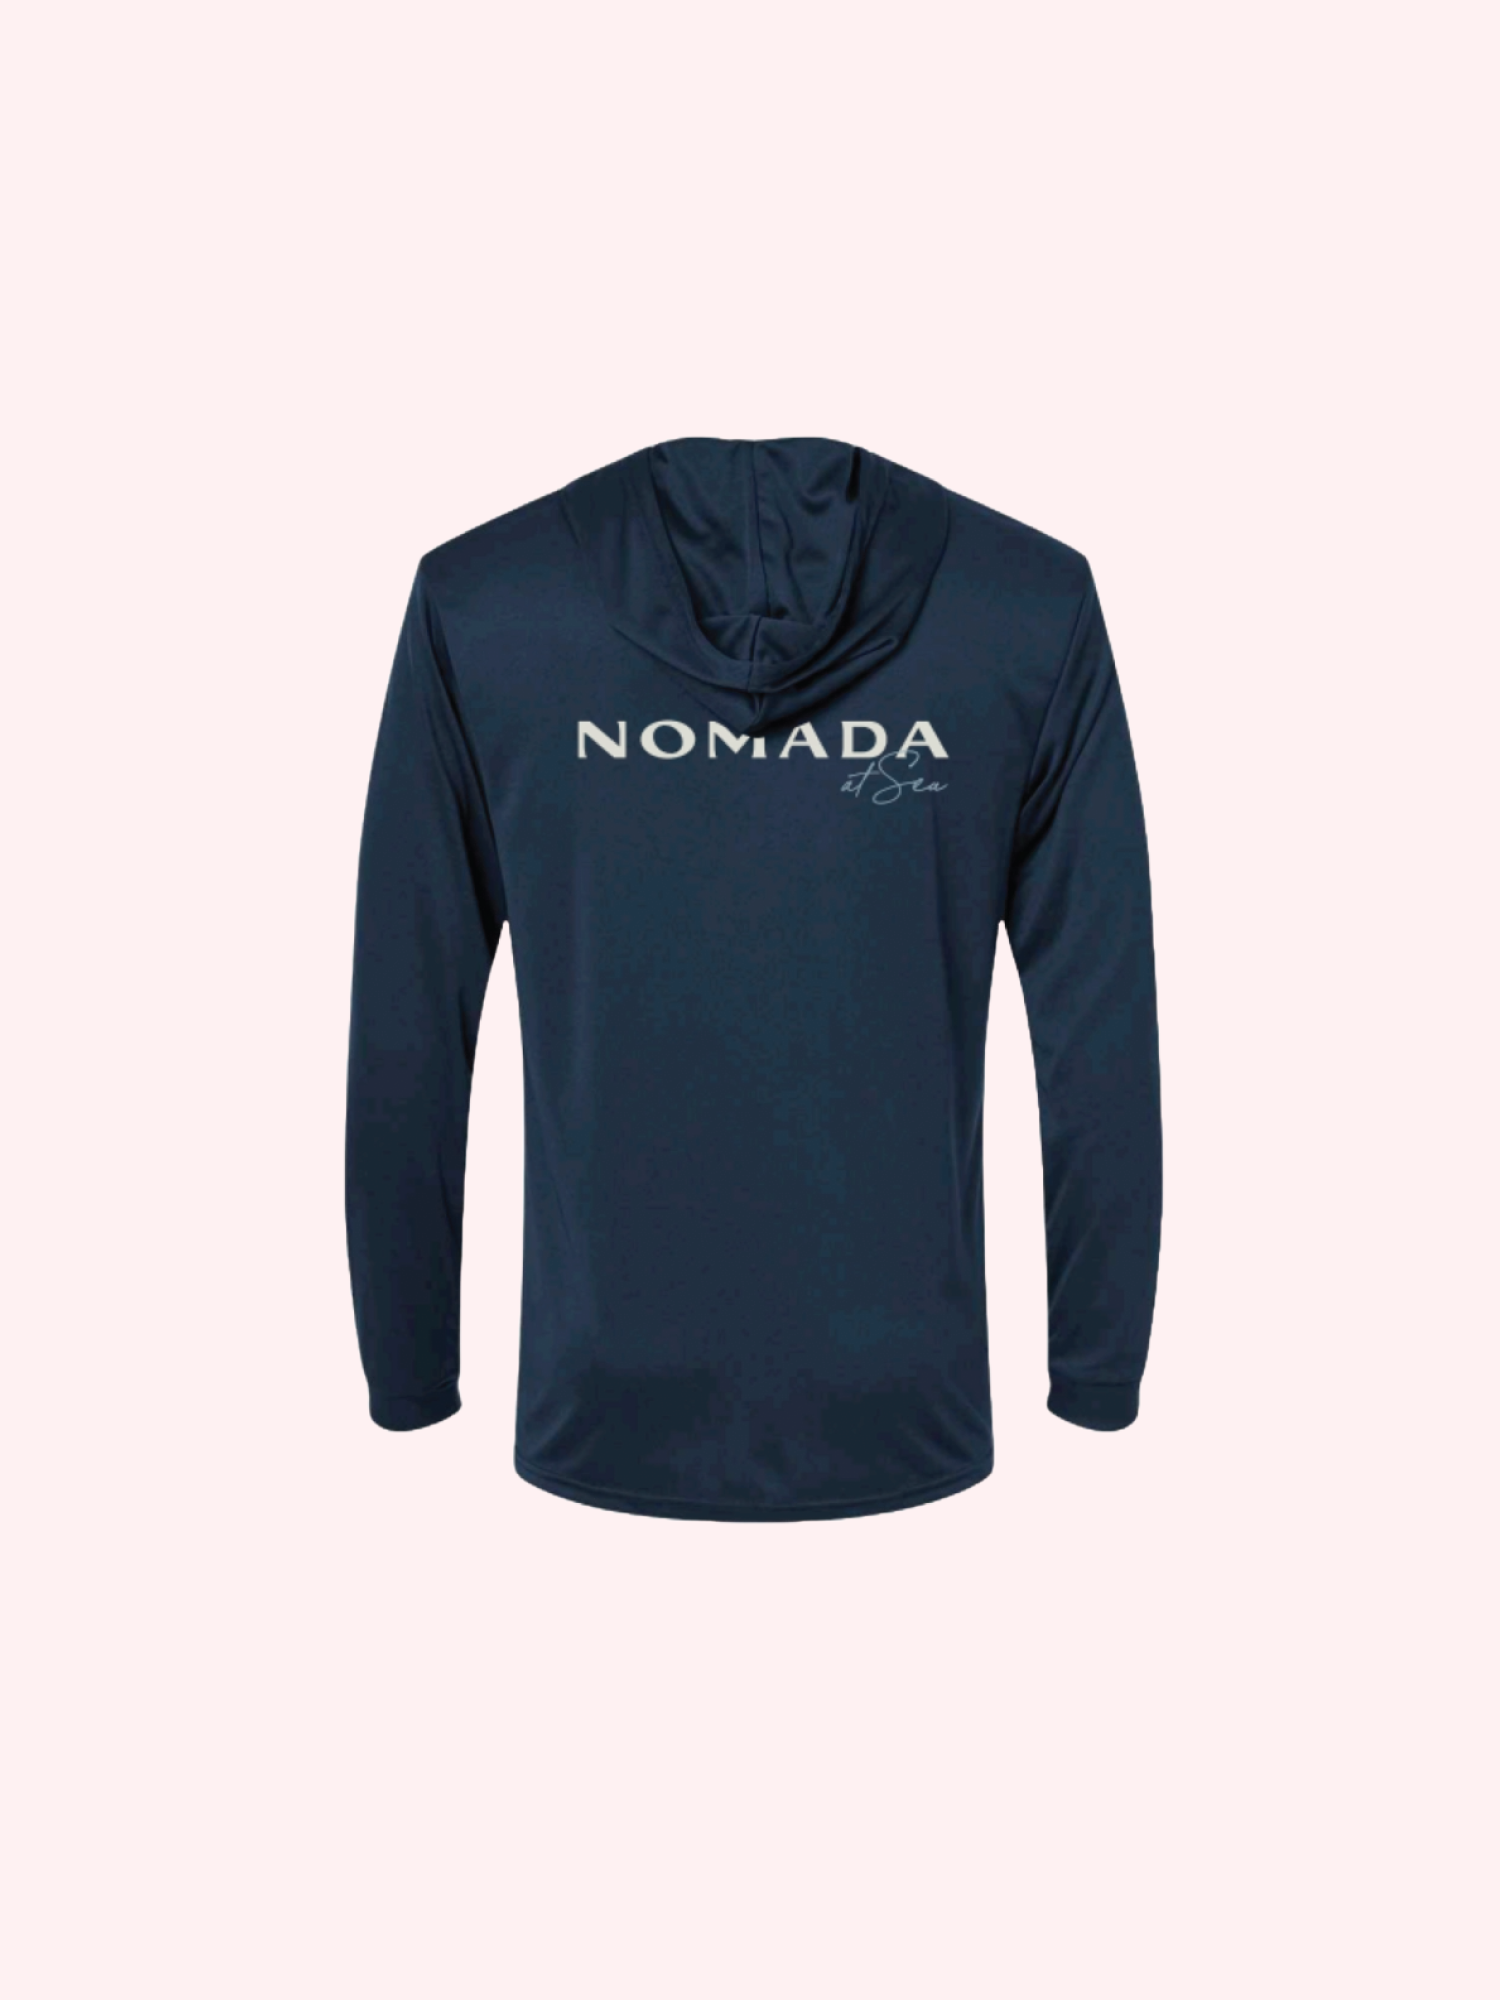 Nomada At Sea Navy Sun Hoody for Nomada at Sea by Nomada Deco